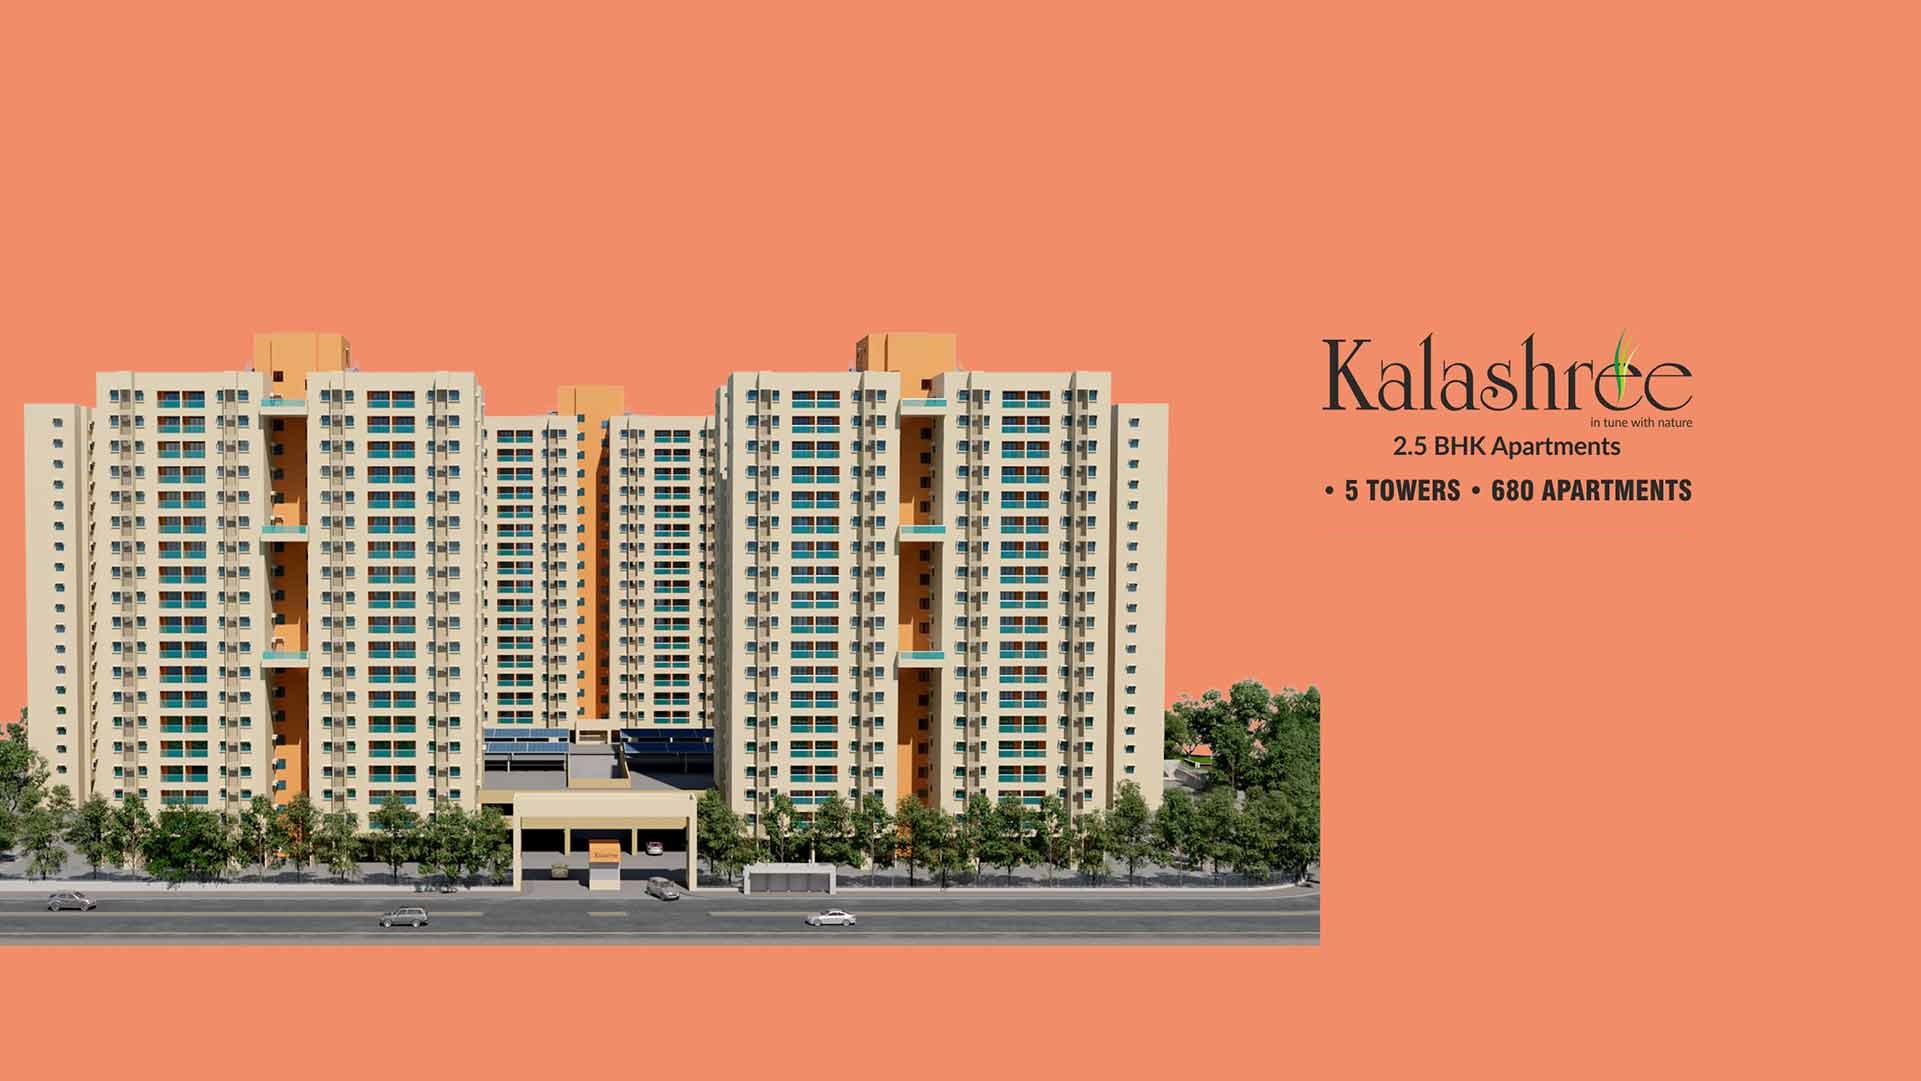 Bageshree-Kalashree launching two new Neighbourhoods